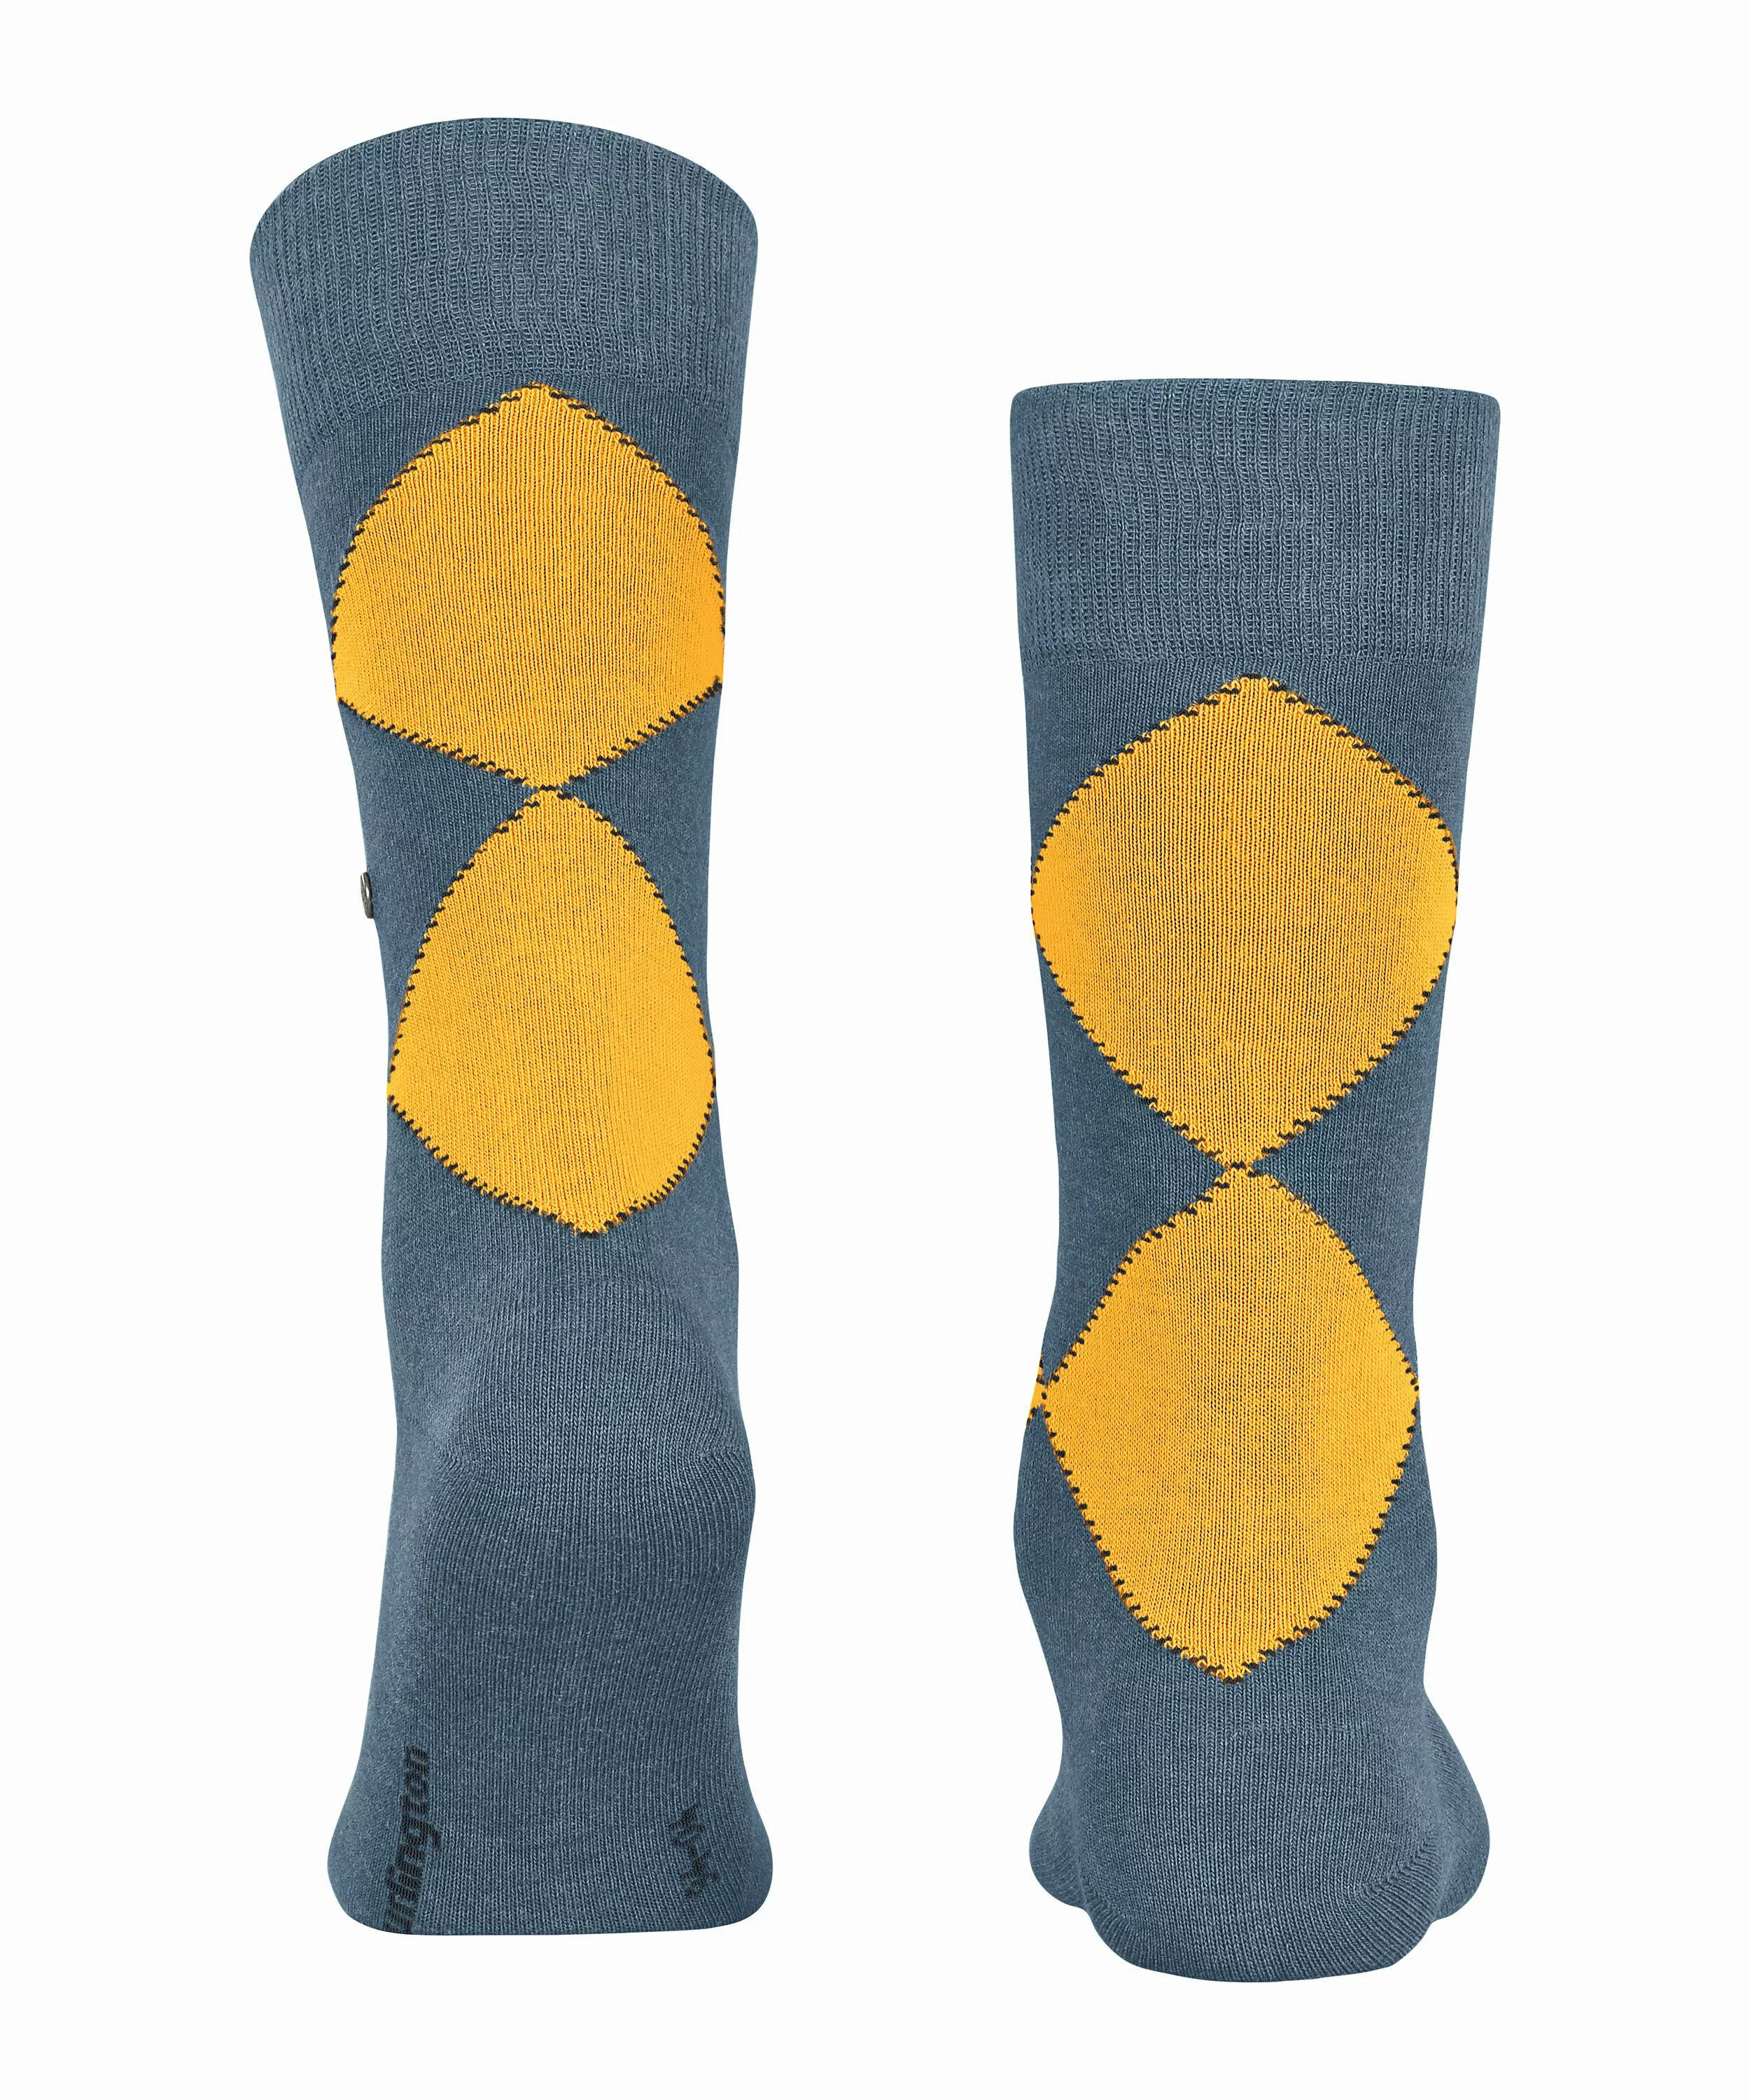 Burlington Kingston Herren Socken, 40-46, Blau, Argyle, Baumwolle (Bio), 21 günstig online kaufen